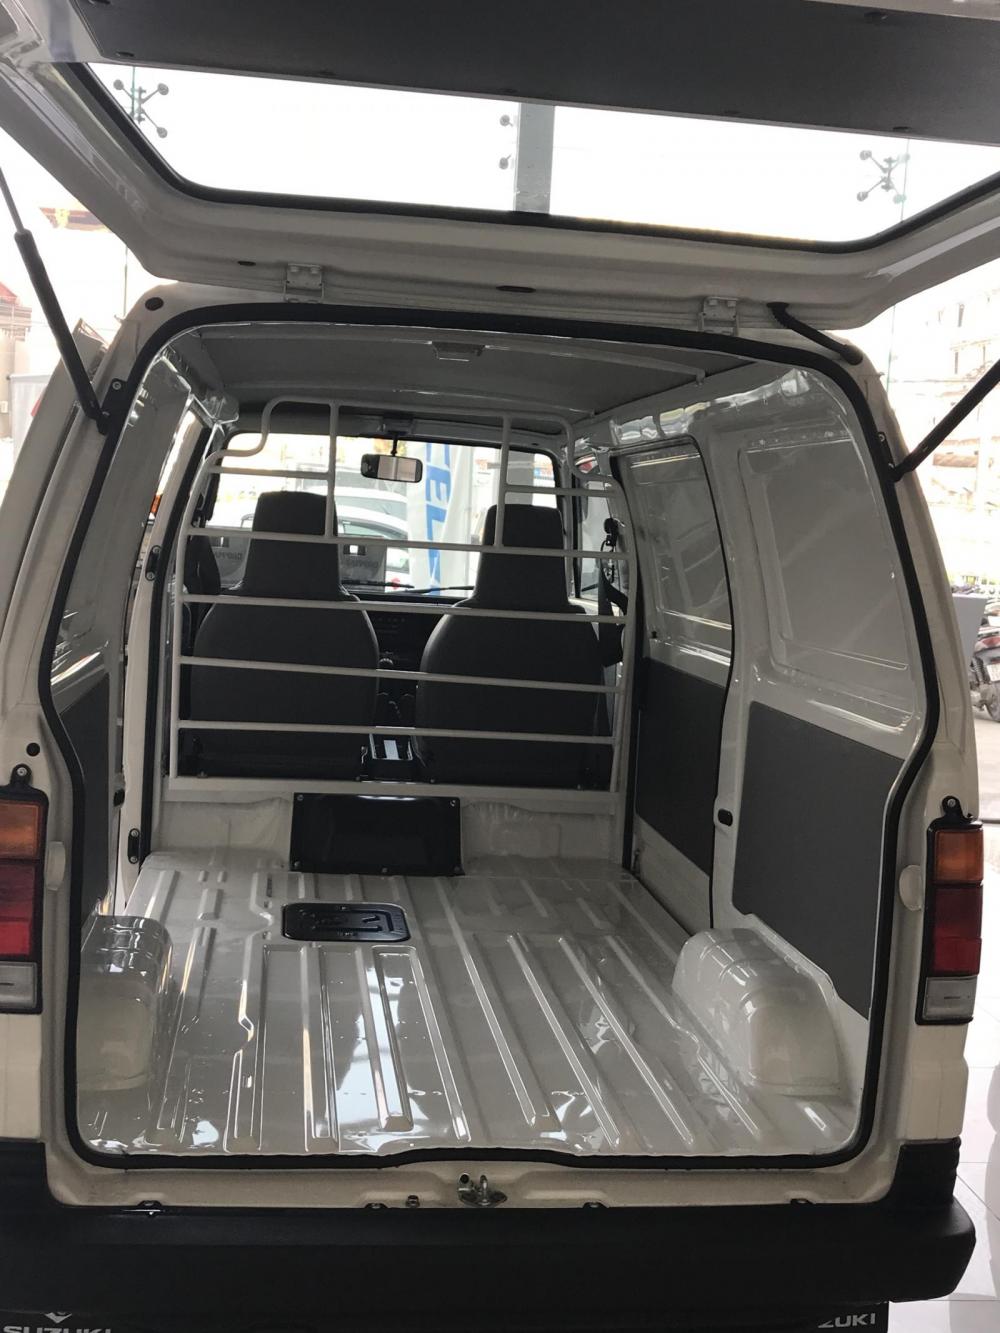 Suzuki Blind Van 2019 - Suzuki Blind Van 2019, liên hệ ngay 0968567922 để nhận giá tốt